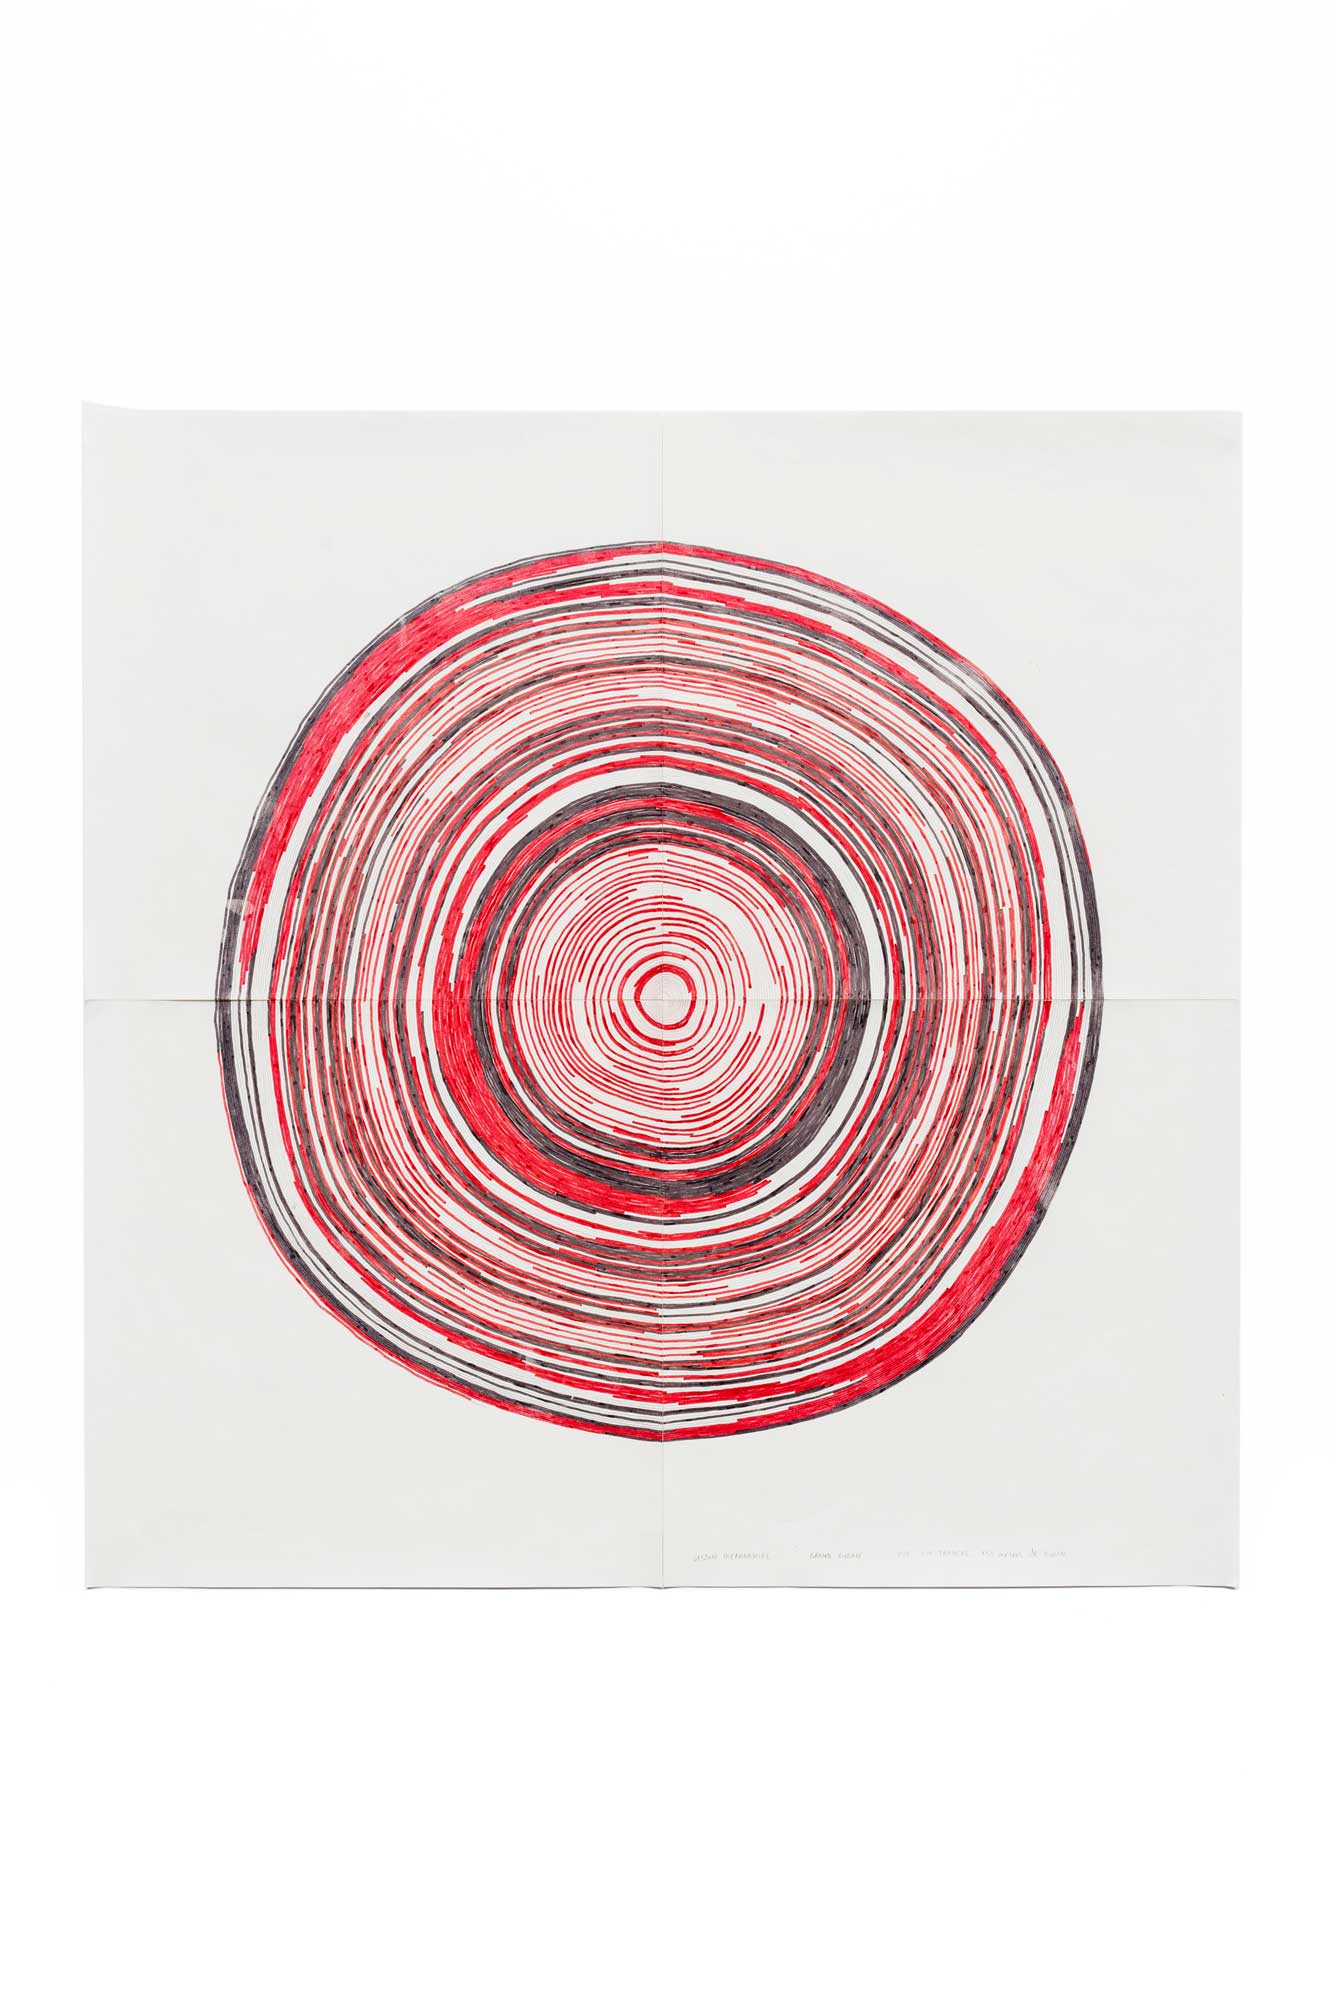 Grand ruban, 2021 - Crayon et feutre sur papier - 58,5 x 59,4 cm - Photo : Johan Poezevara